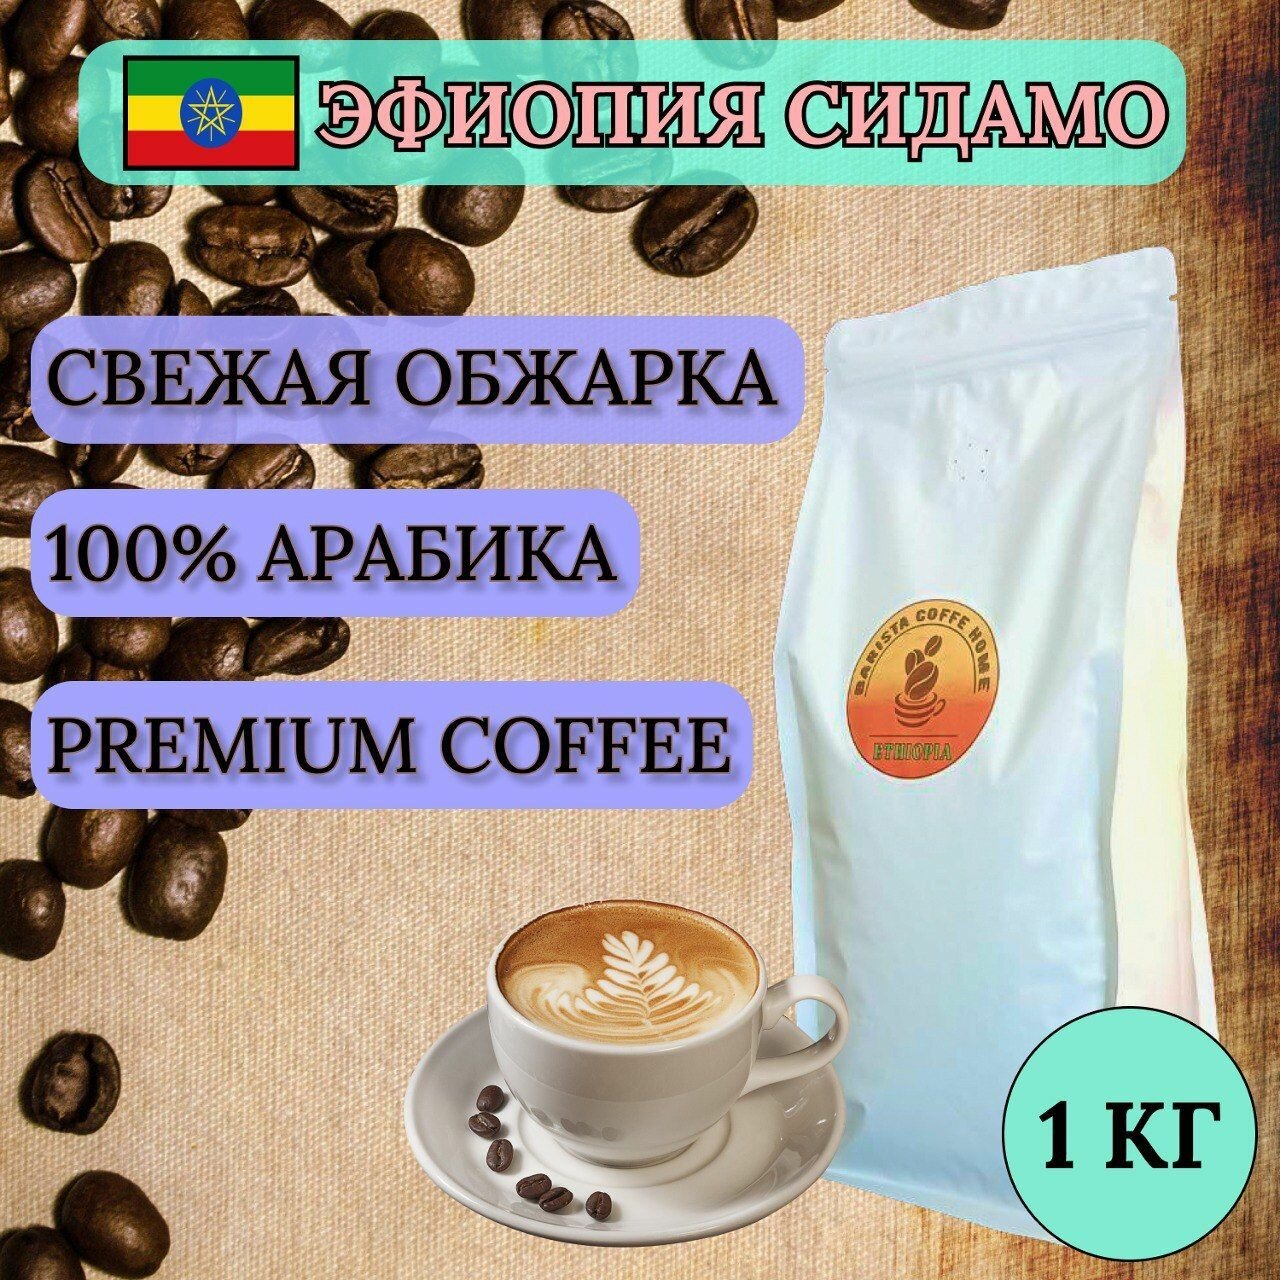 Кофе в зернах 1 кг, средняя обжарка, Эфиопия Сидамо